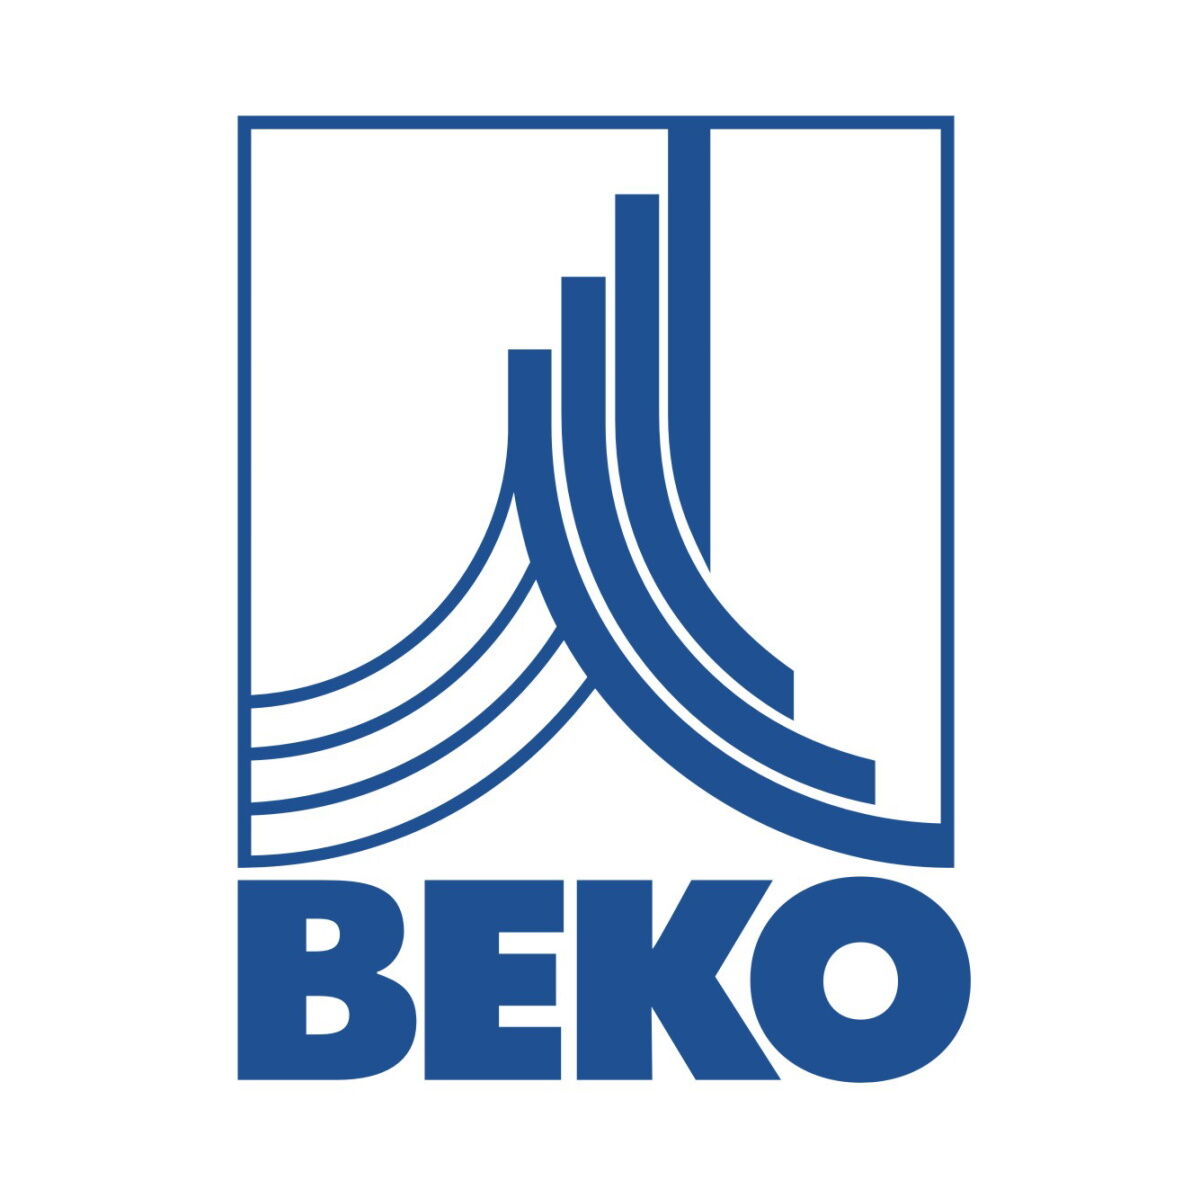 BEKO Verbindungs-Set für 2 Gehäuse CLEARPOINT S075 / M010 / M012